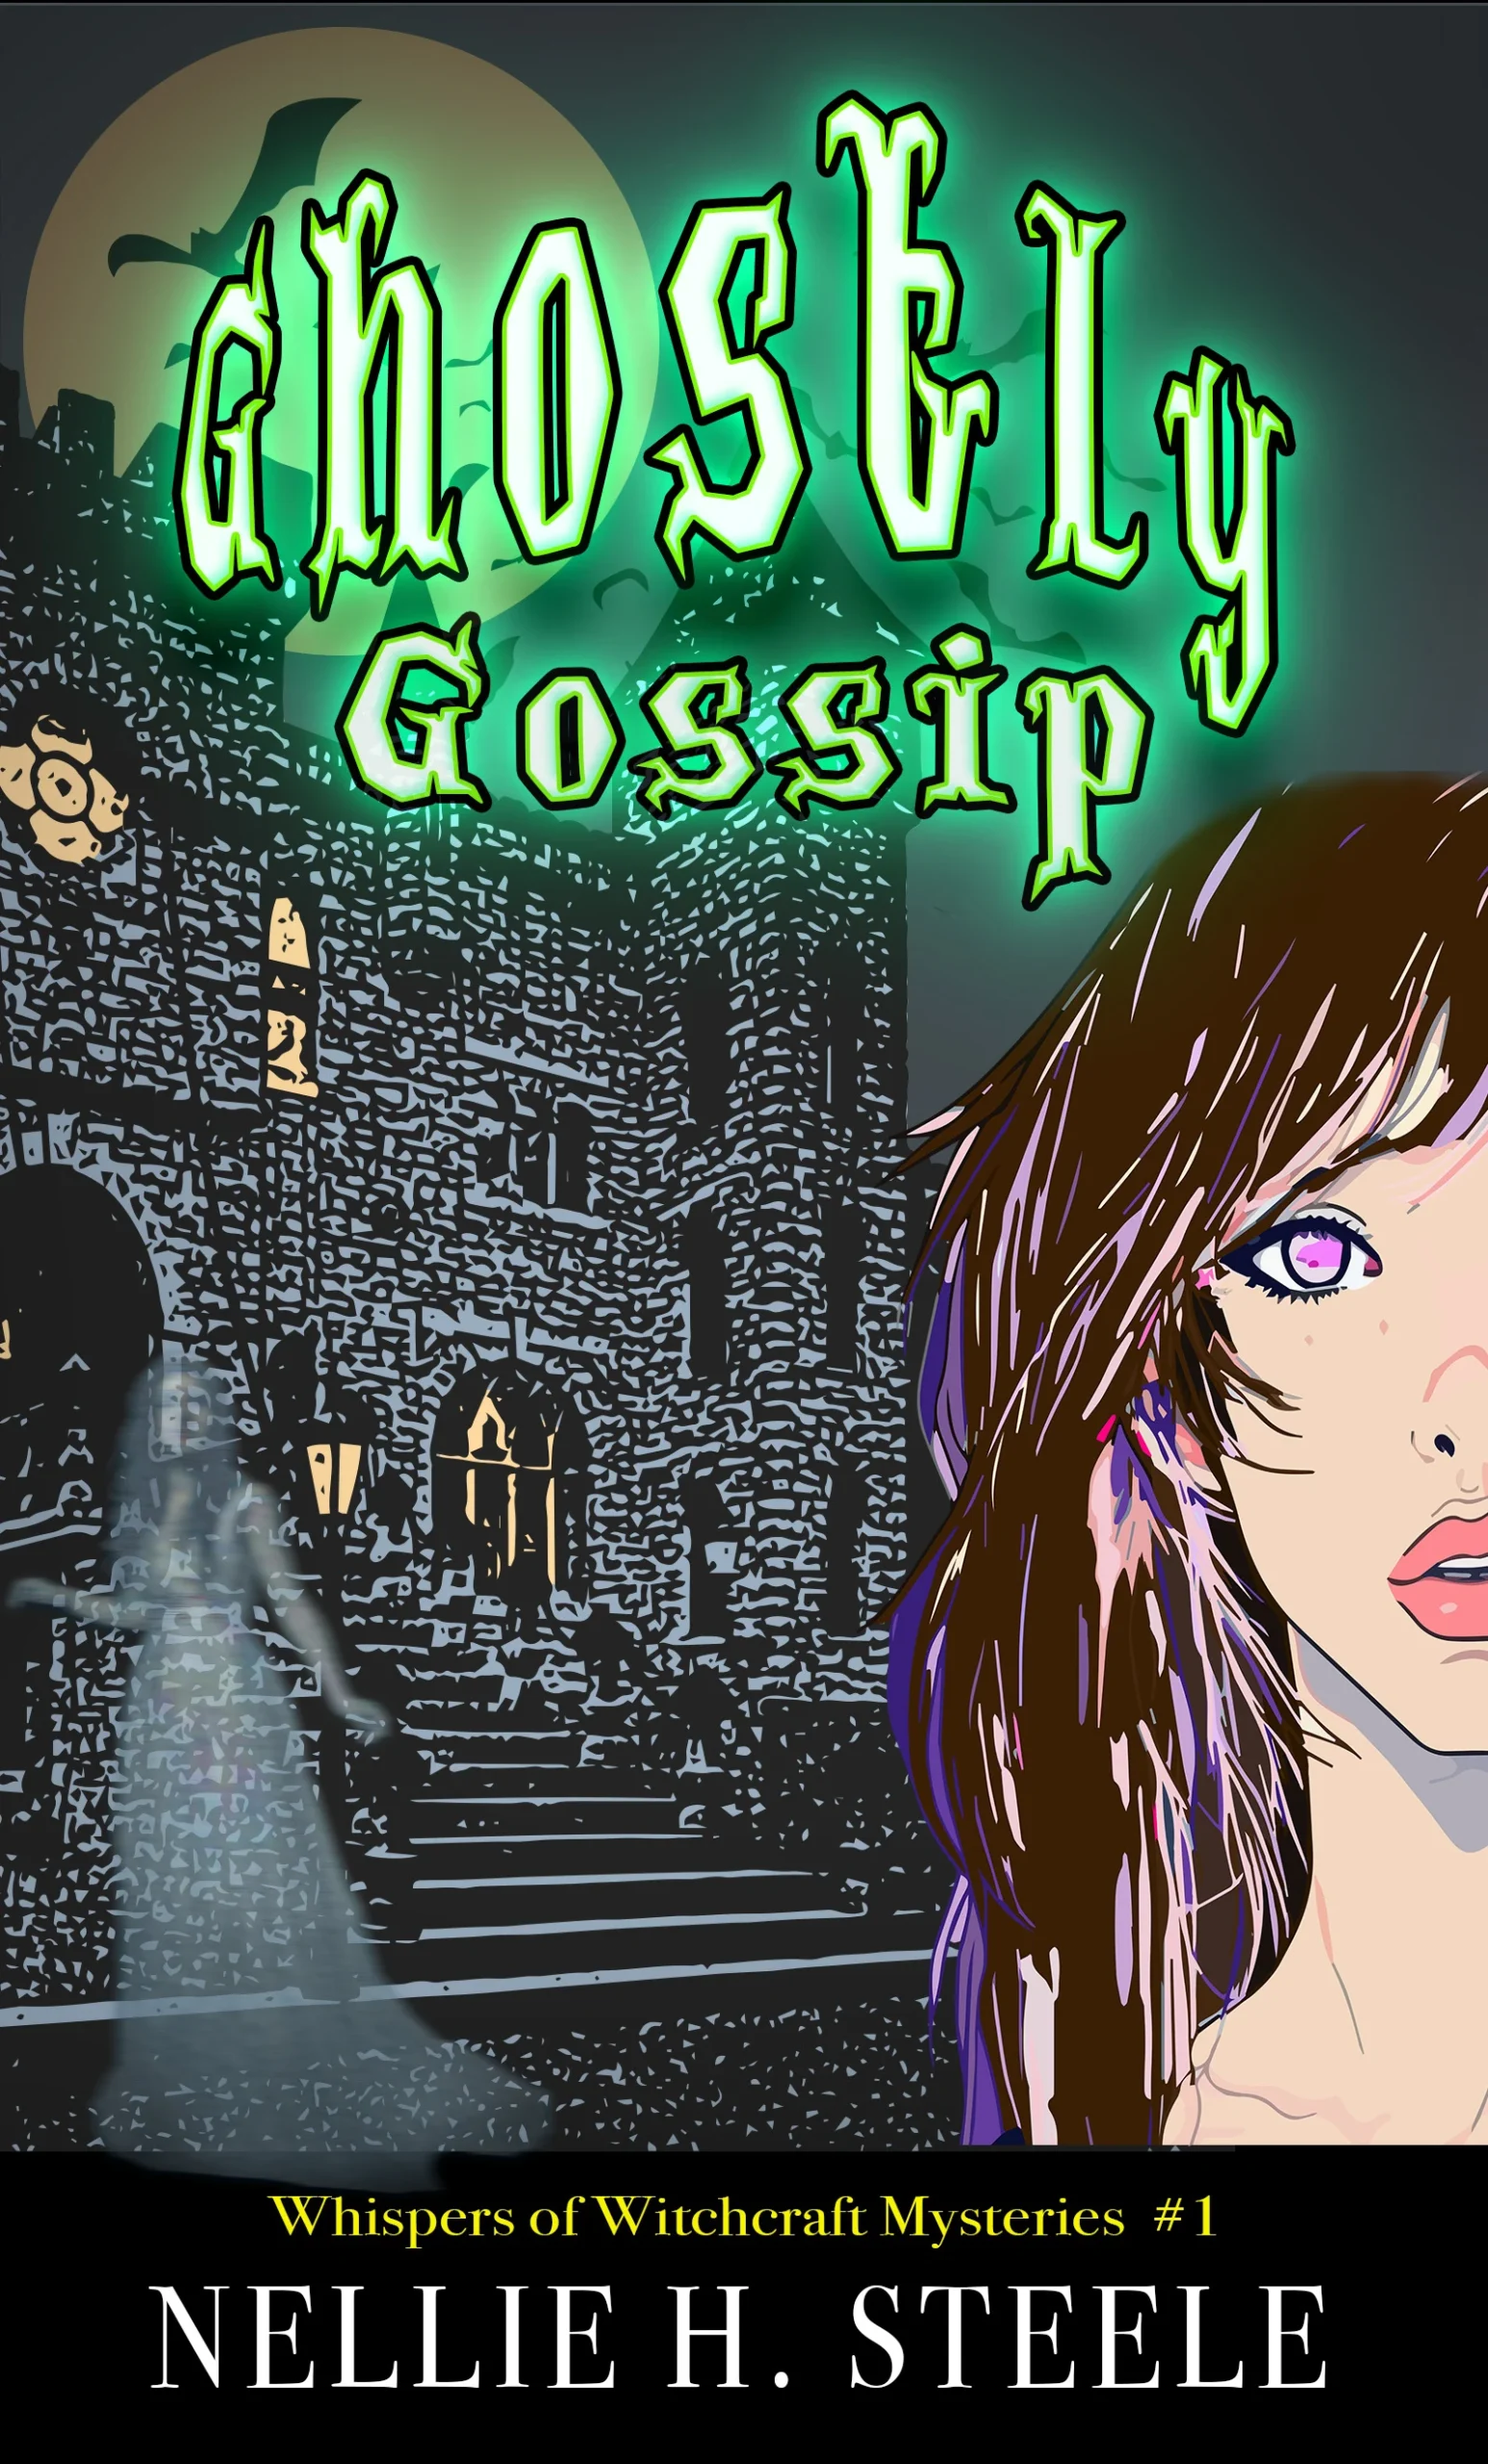 Ghostly Gossip